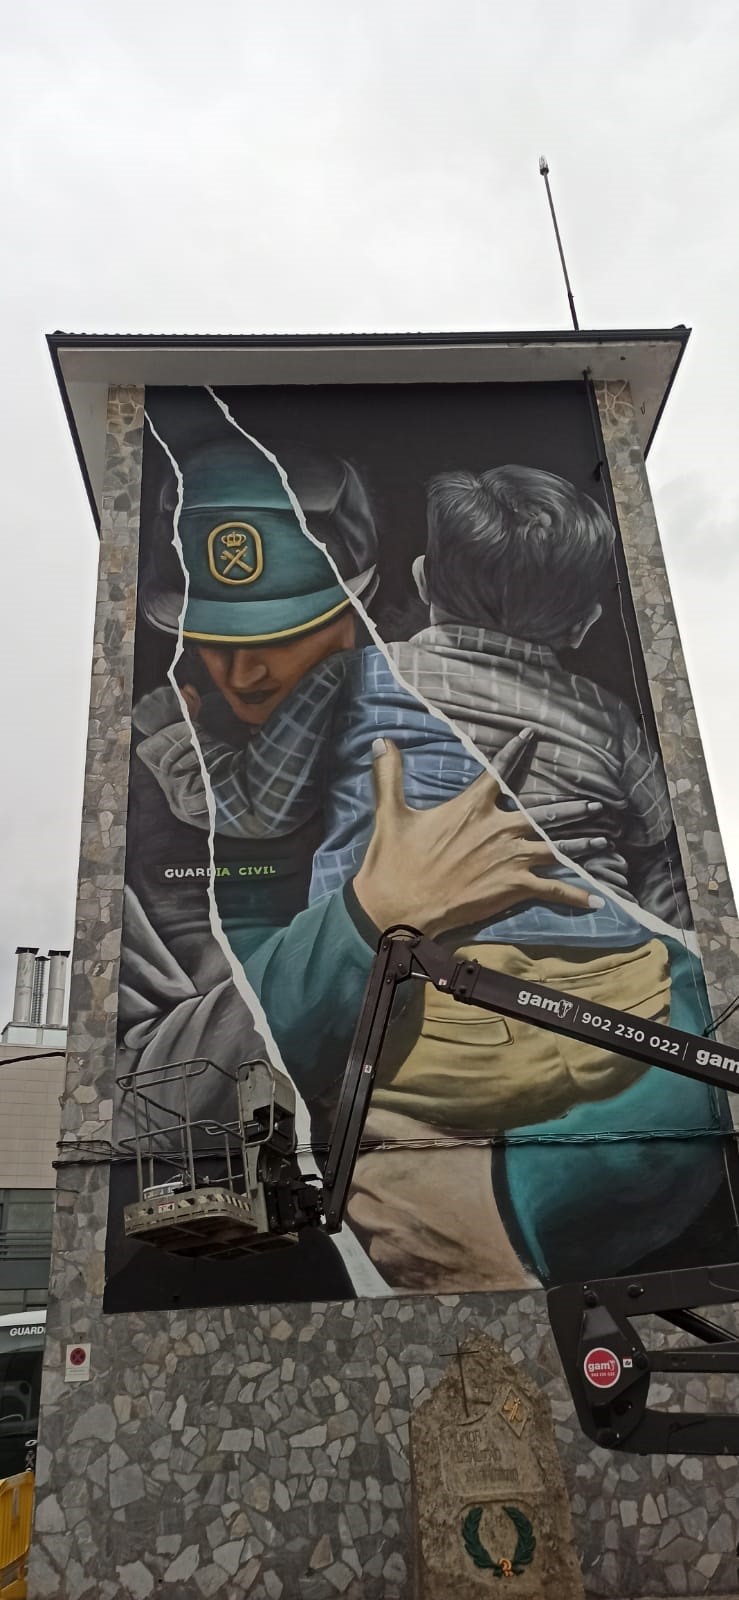 Diego As, autor del mejor grafiti del mundo, a punto de concluir un mural en la comandancia de la Guardia Civil de Lugo